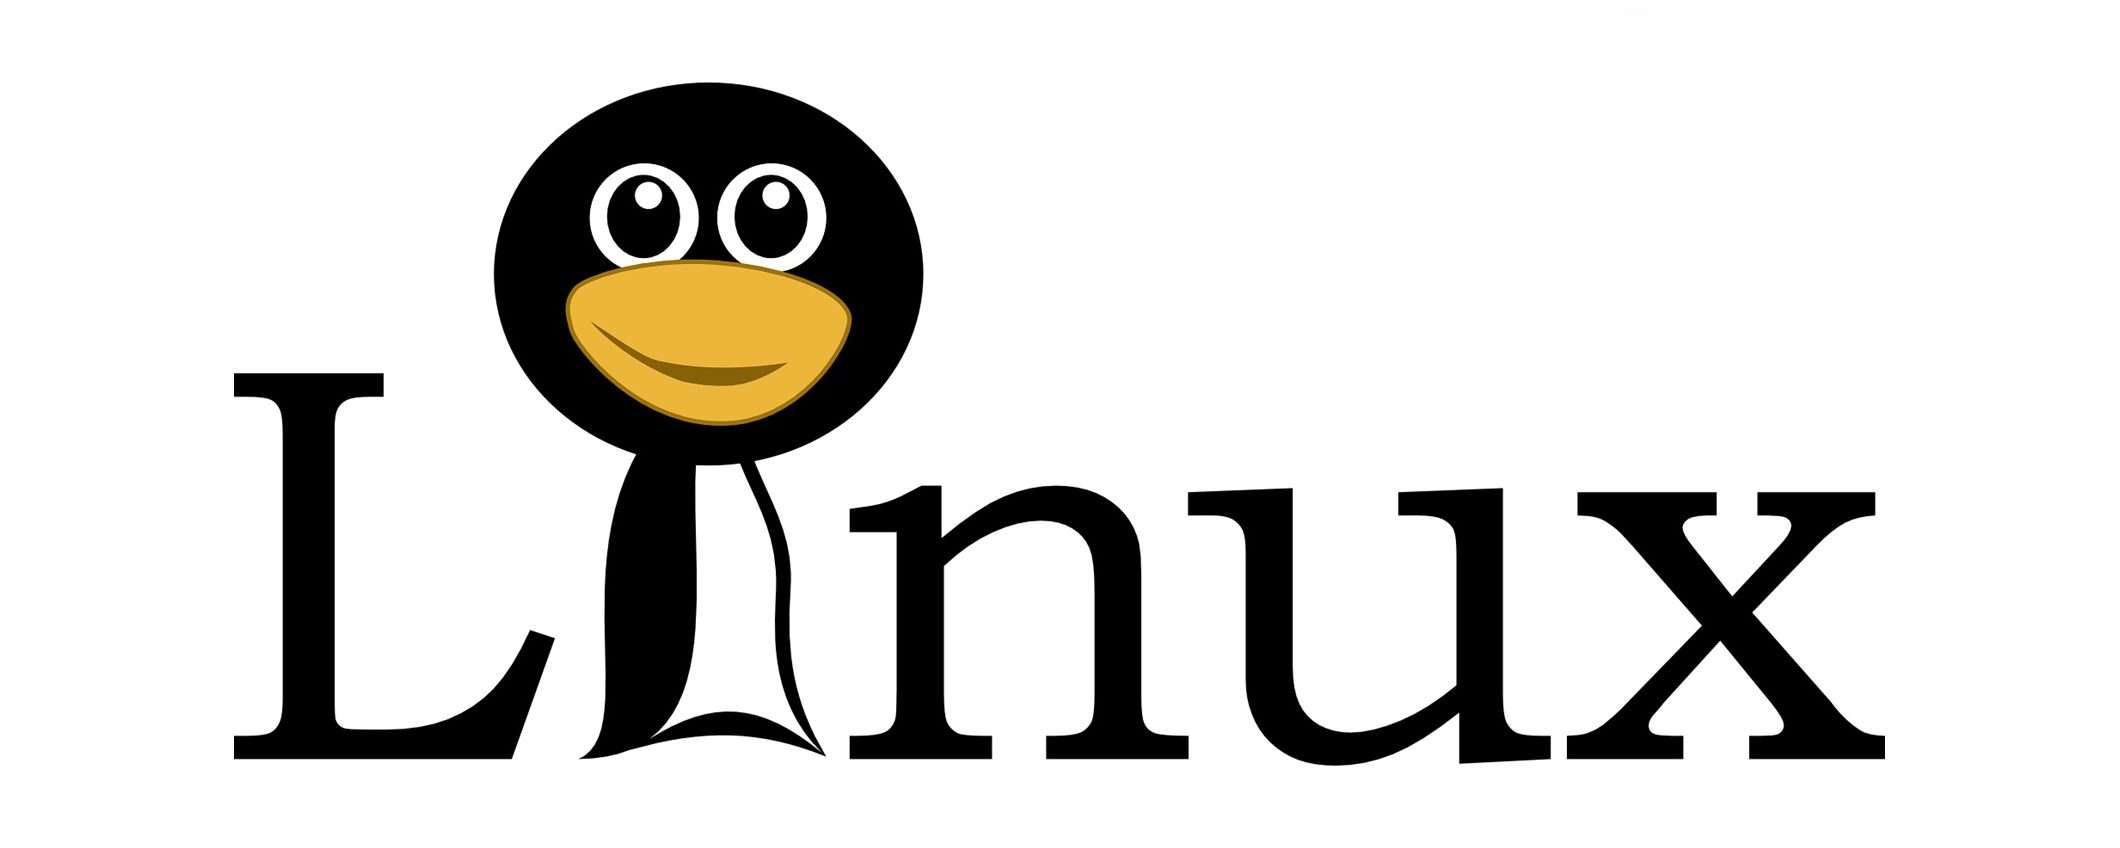 Linux a rischio, scoperta grave falla di sicurezza